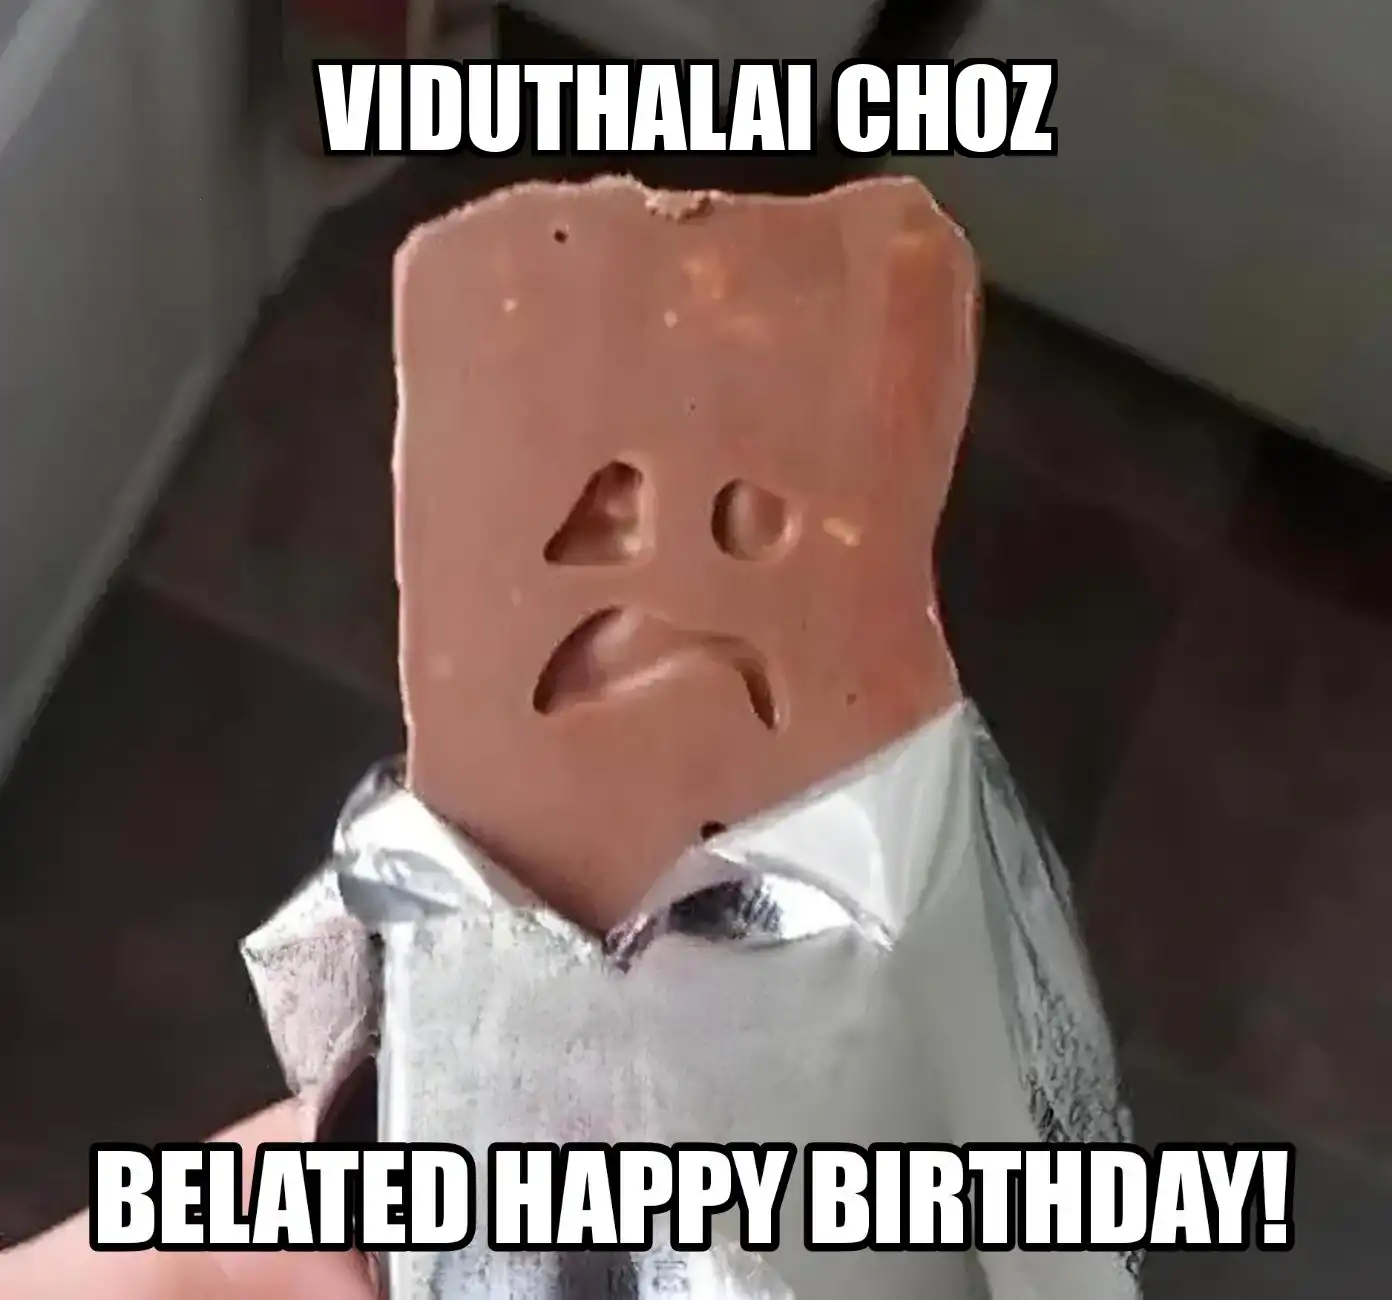 Happy Birthday Viduthalai choz Belated Happy Birthday Meme